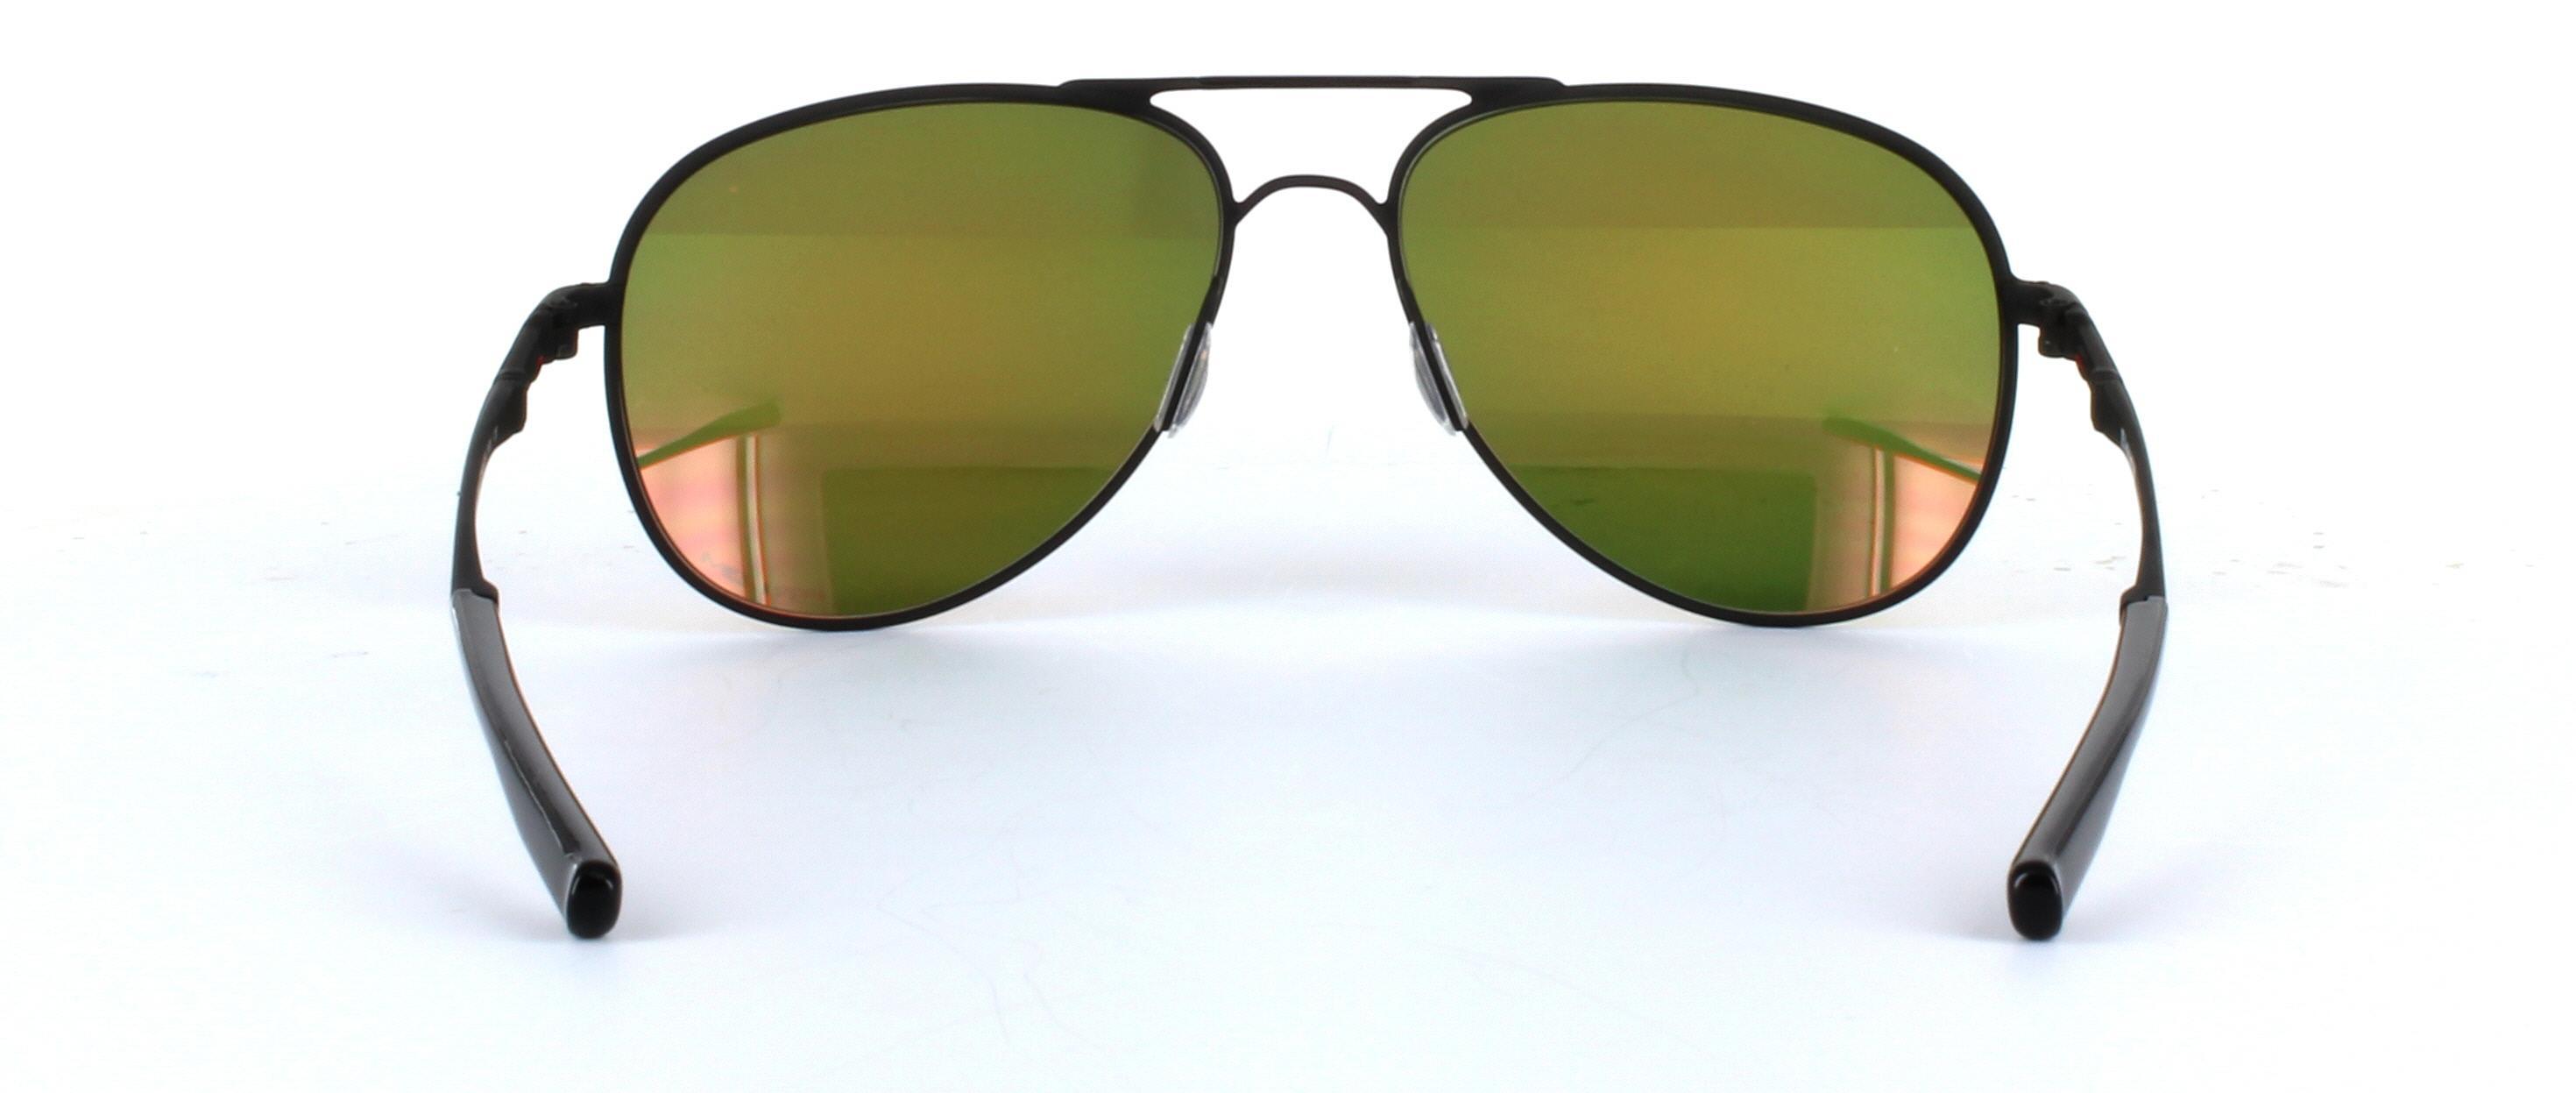 Elmont Oakley Sunglasses in Black | Glasses | Glasses2You